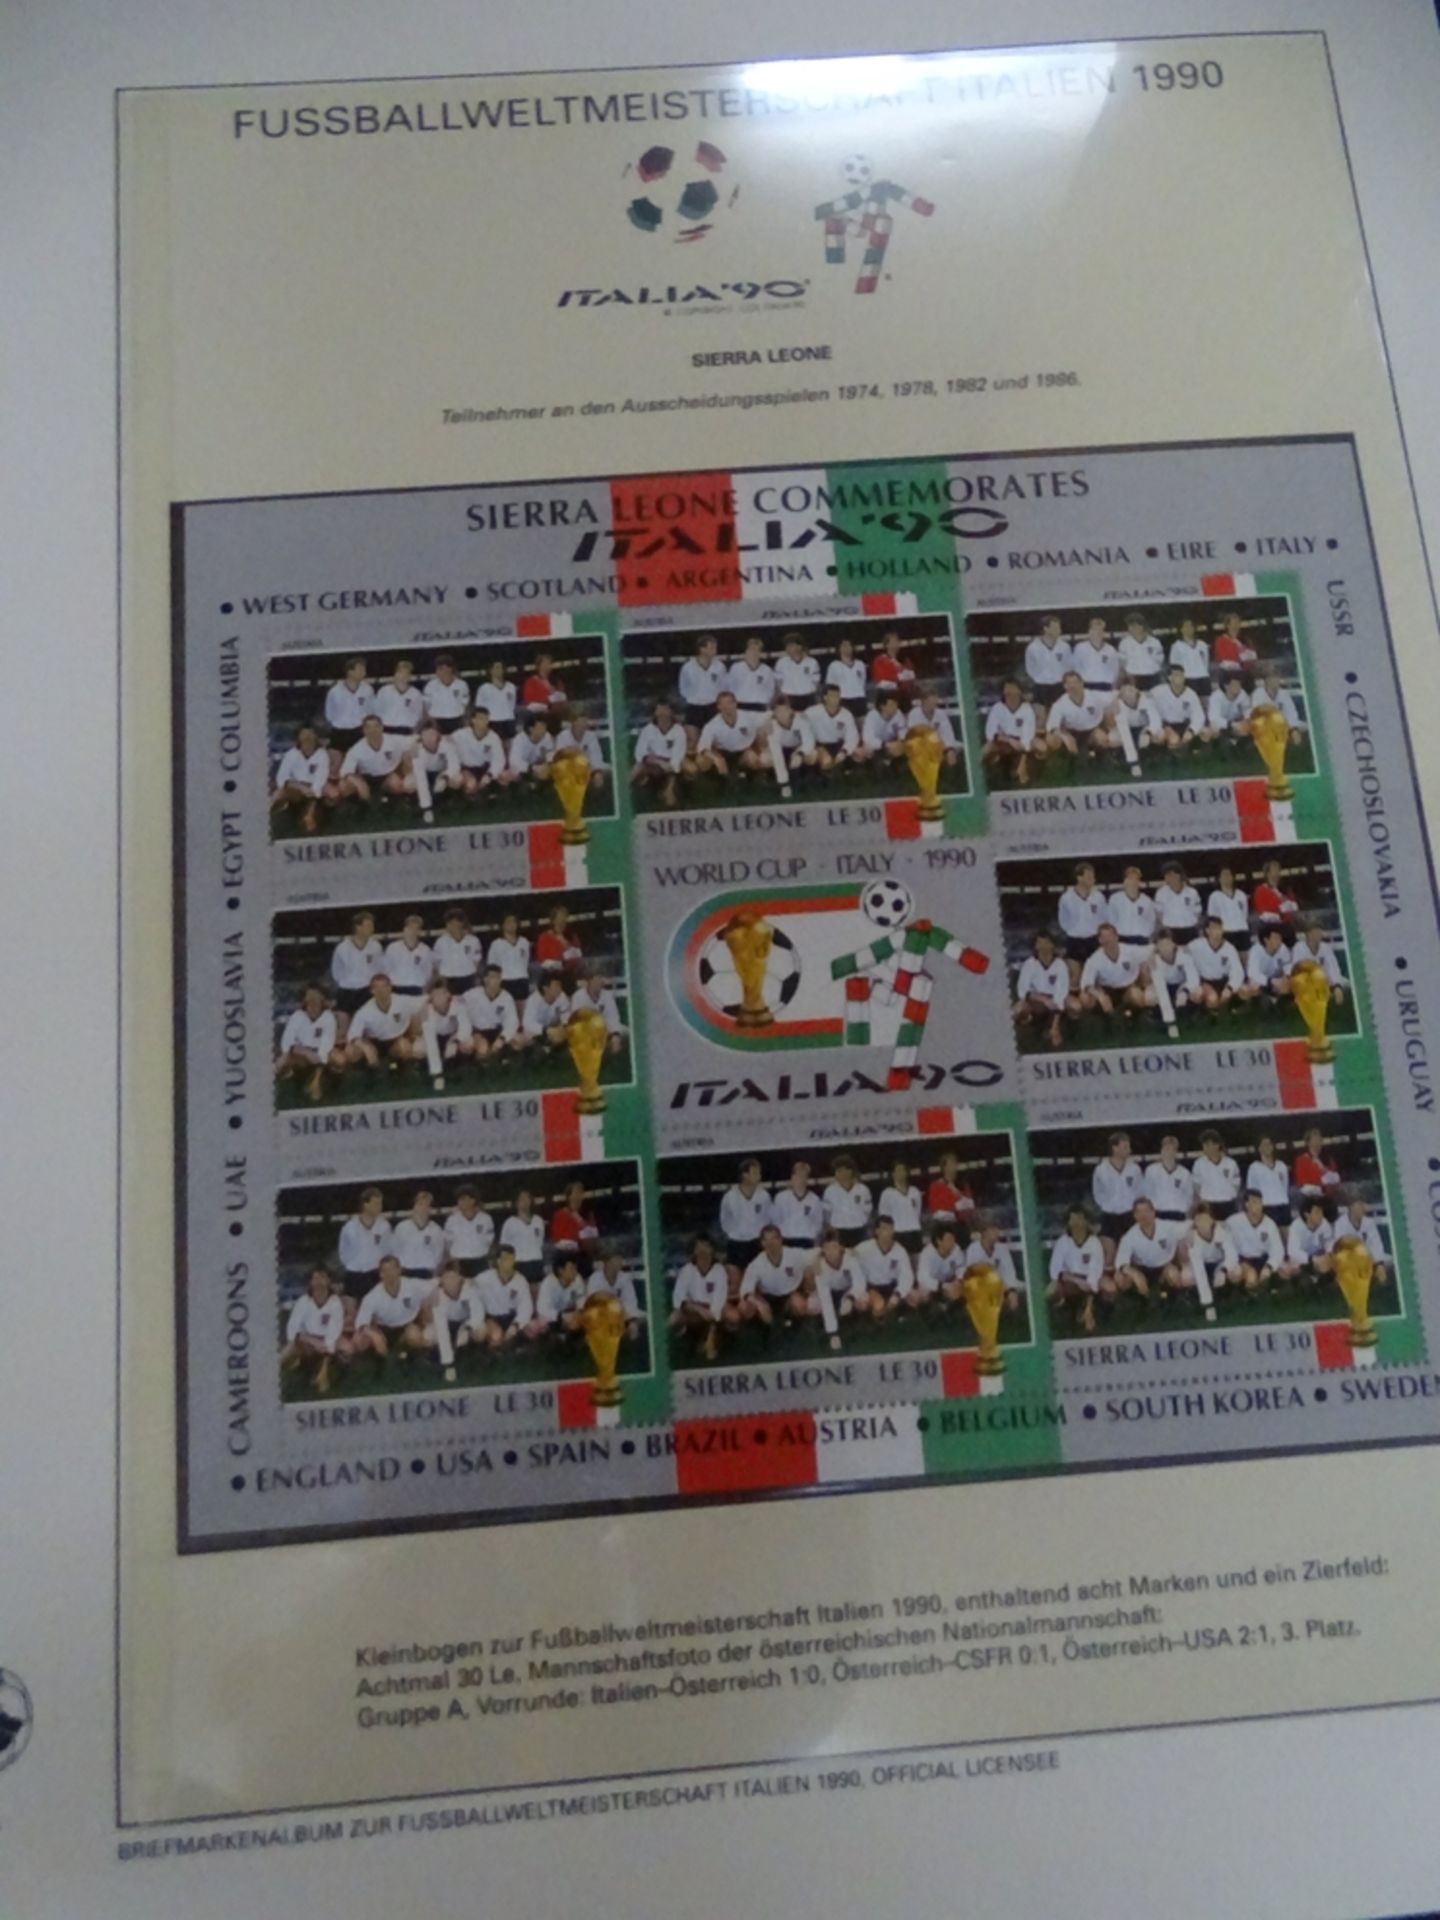 4x lomplette Linbder Ordner  "Italia 90" Briefmarkenalbum zur Fussball- Weltmeisterschaft, official - Bild 7 aus 13